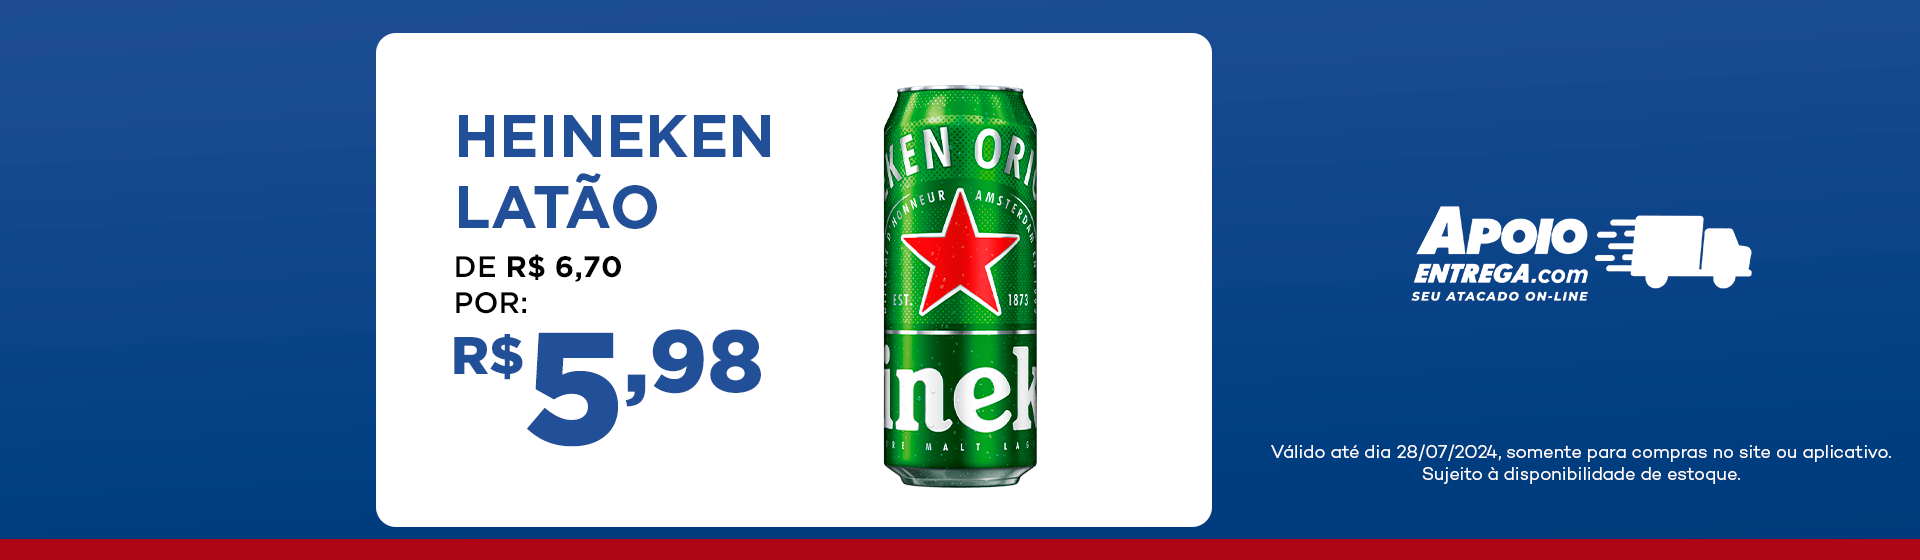 Heineken Latão de: R$ 6,70 por: R$ 5,98 até 28/07